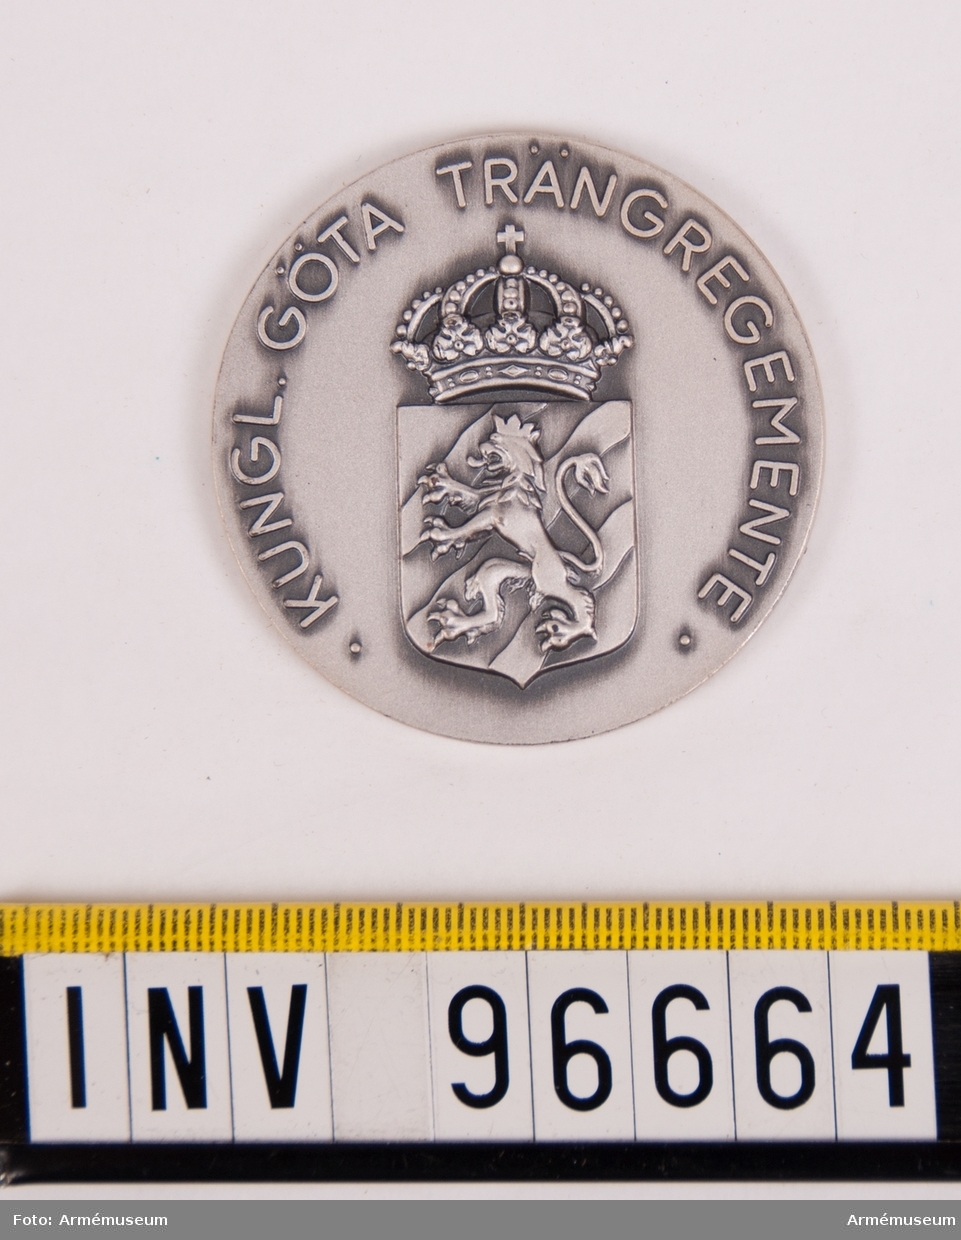 Medalj i silver för Göta trängregemente.
Åtsida upptagande rak sköld med lejon på strömmar, krönt av kunglig krona, inom omskrift KUNGL. GÖTA TRÄNGREGEMENTE.
Stans nr 14399. Lagerkrans 3377.
Stans härdad 1954-05-13.